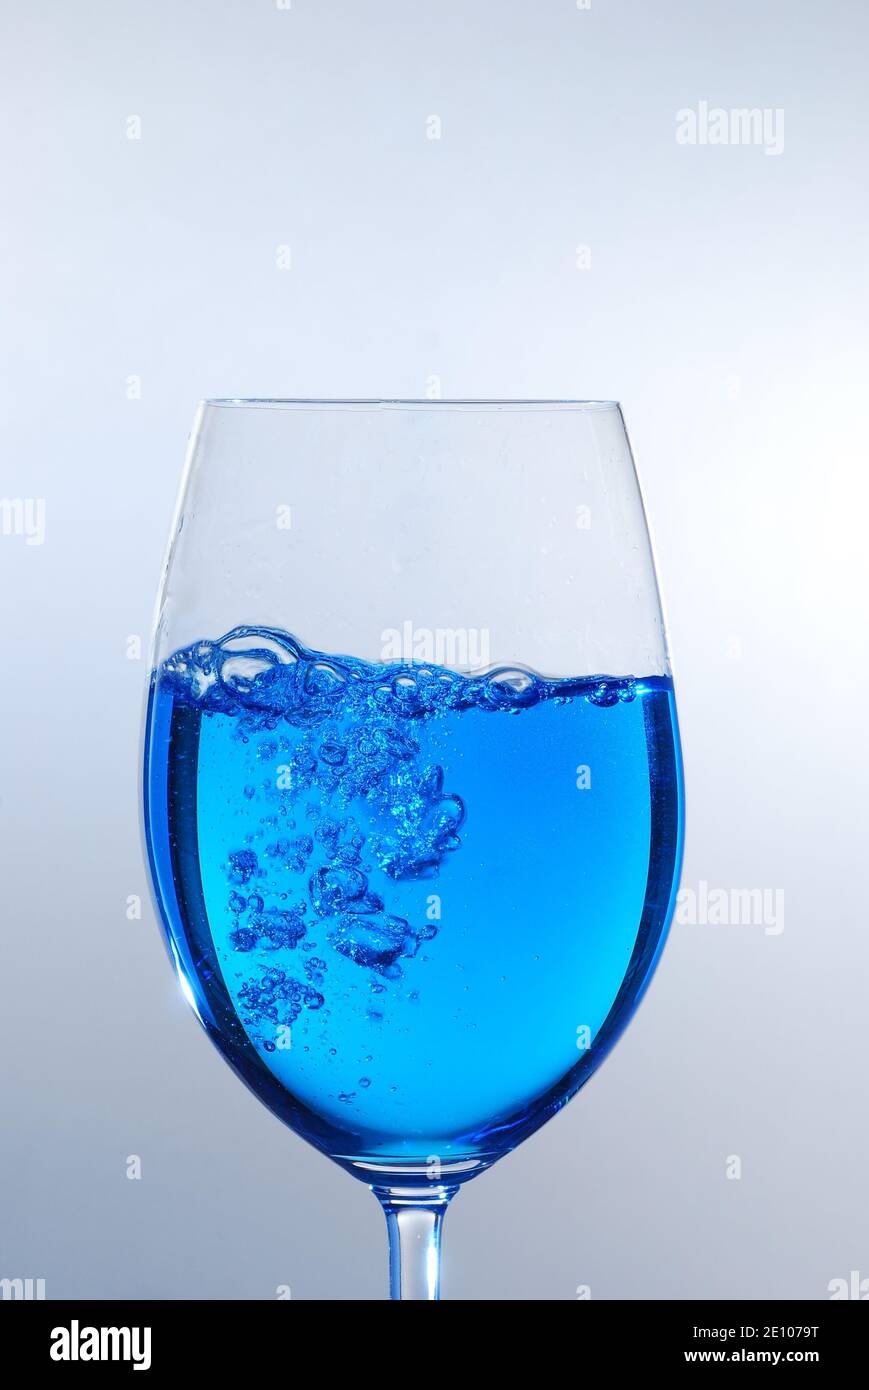 Синяя стопка. Стакан с голубой жидкостью. Бокал с голубой жидкостью. Синяя жидкость. Синяя жидкость в стакане.